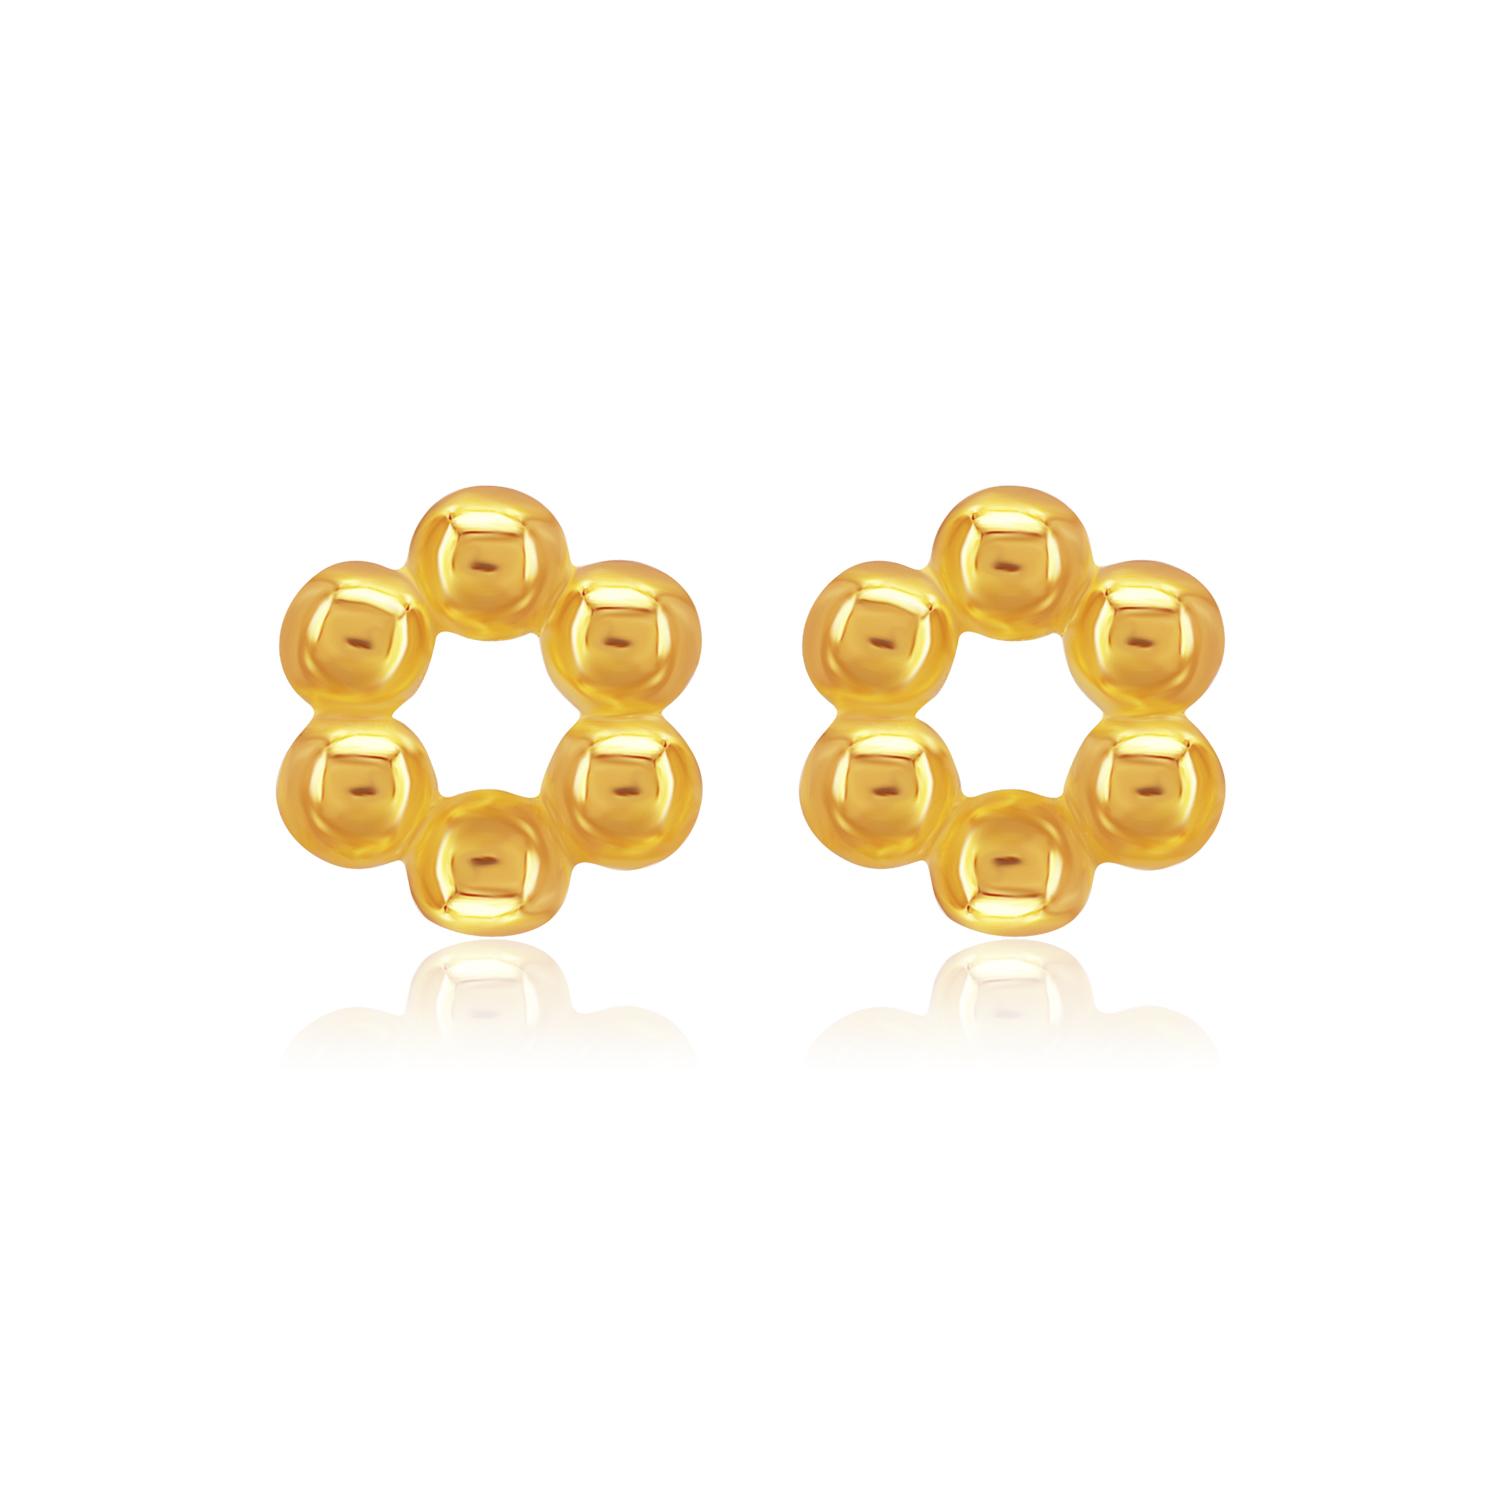 SUBANG EMAS SK 916 GOLD LUXE subang minimalis direka dalam emas 916 berbentuk hexagon berjeniskan stud